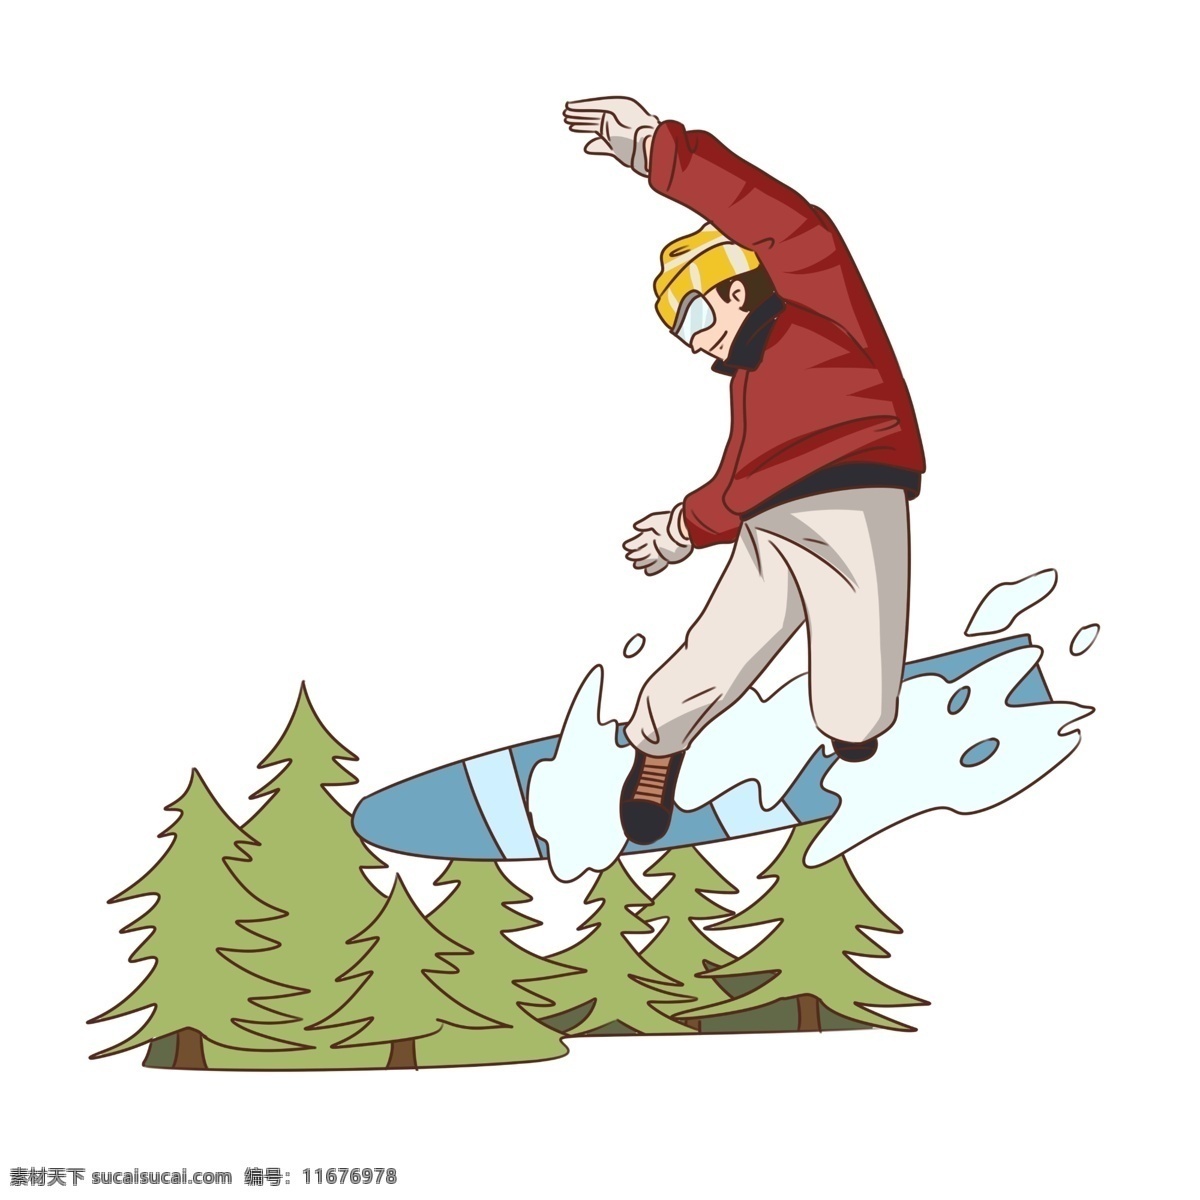 手绘 冬季 旅游 滑雪 体验 男子 插画 树木 滑雪体验 冰雪运动 雪上运动 滑雪板 滑雪场 卡通男子